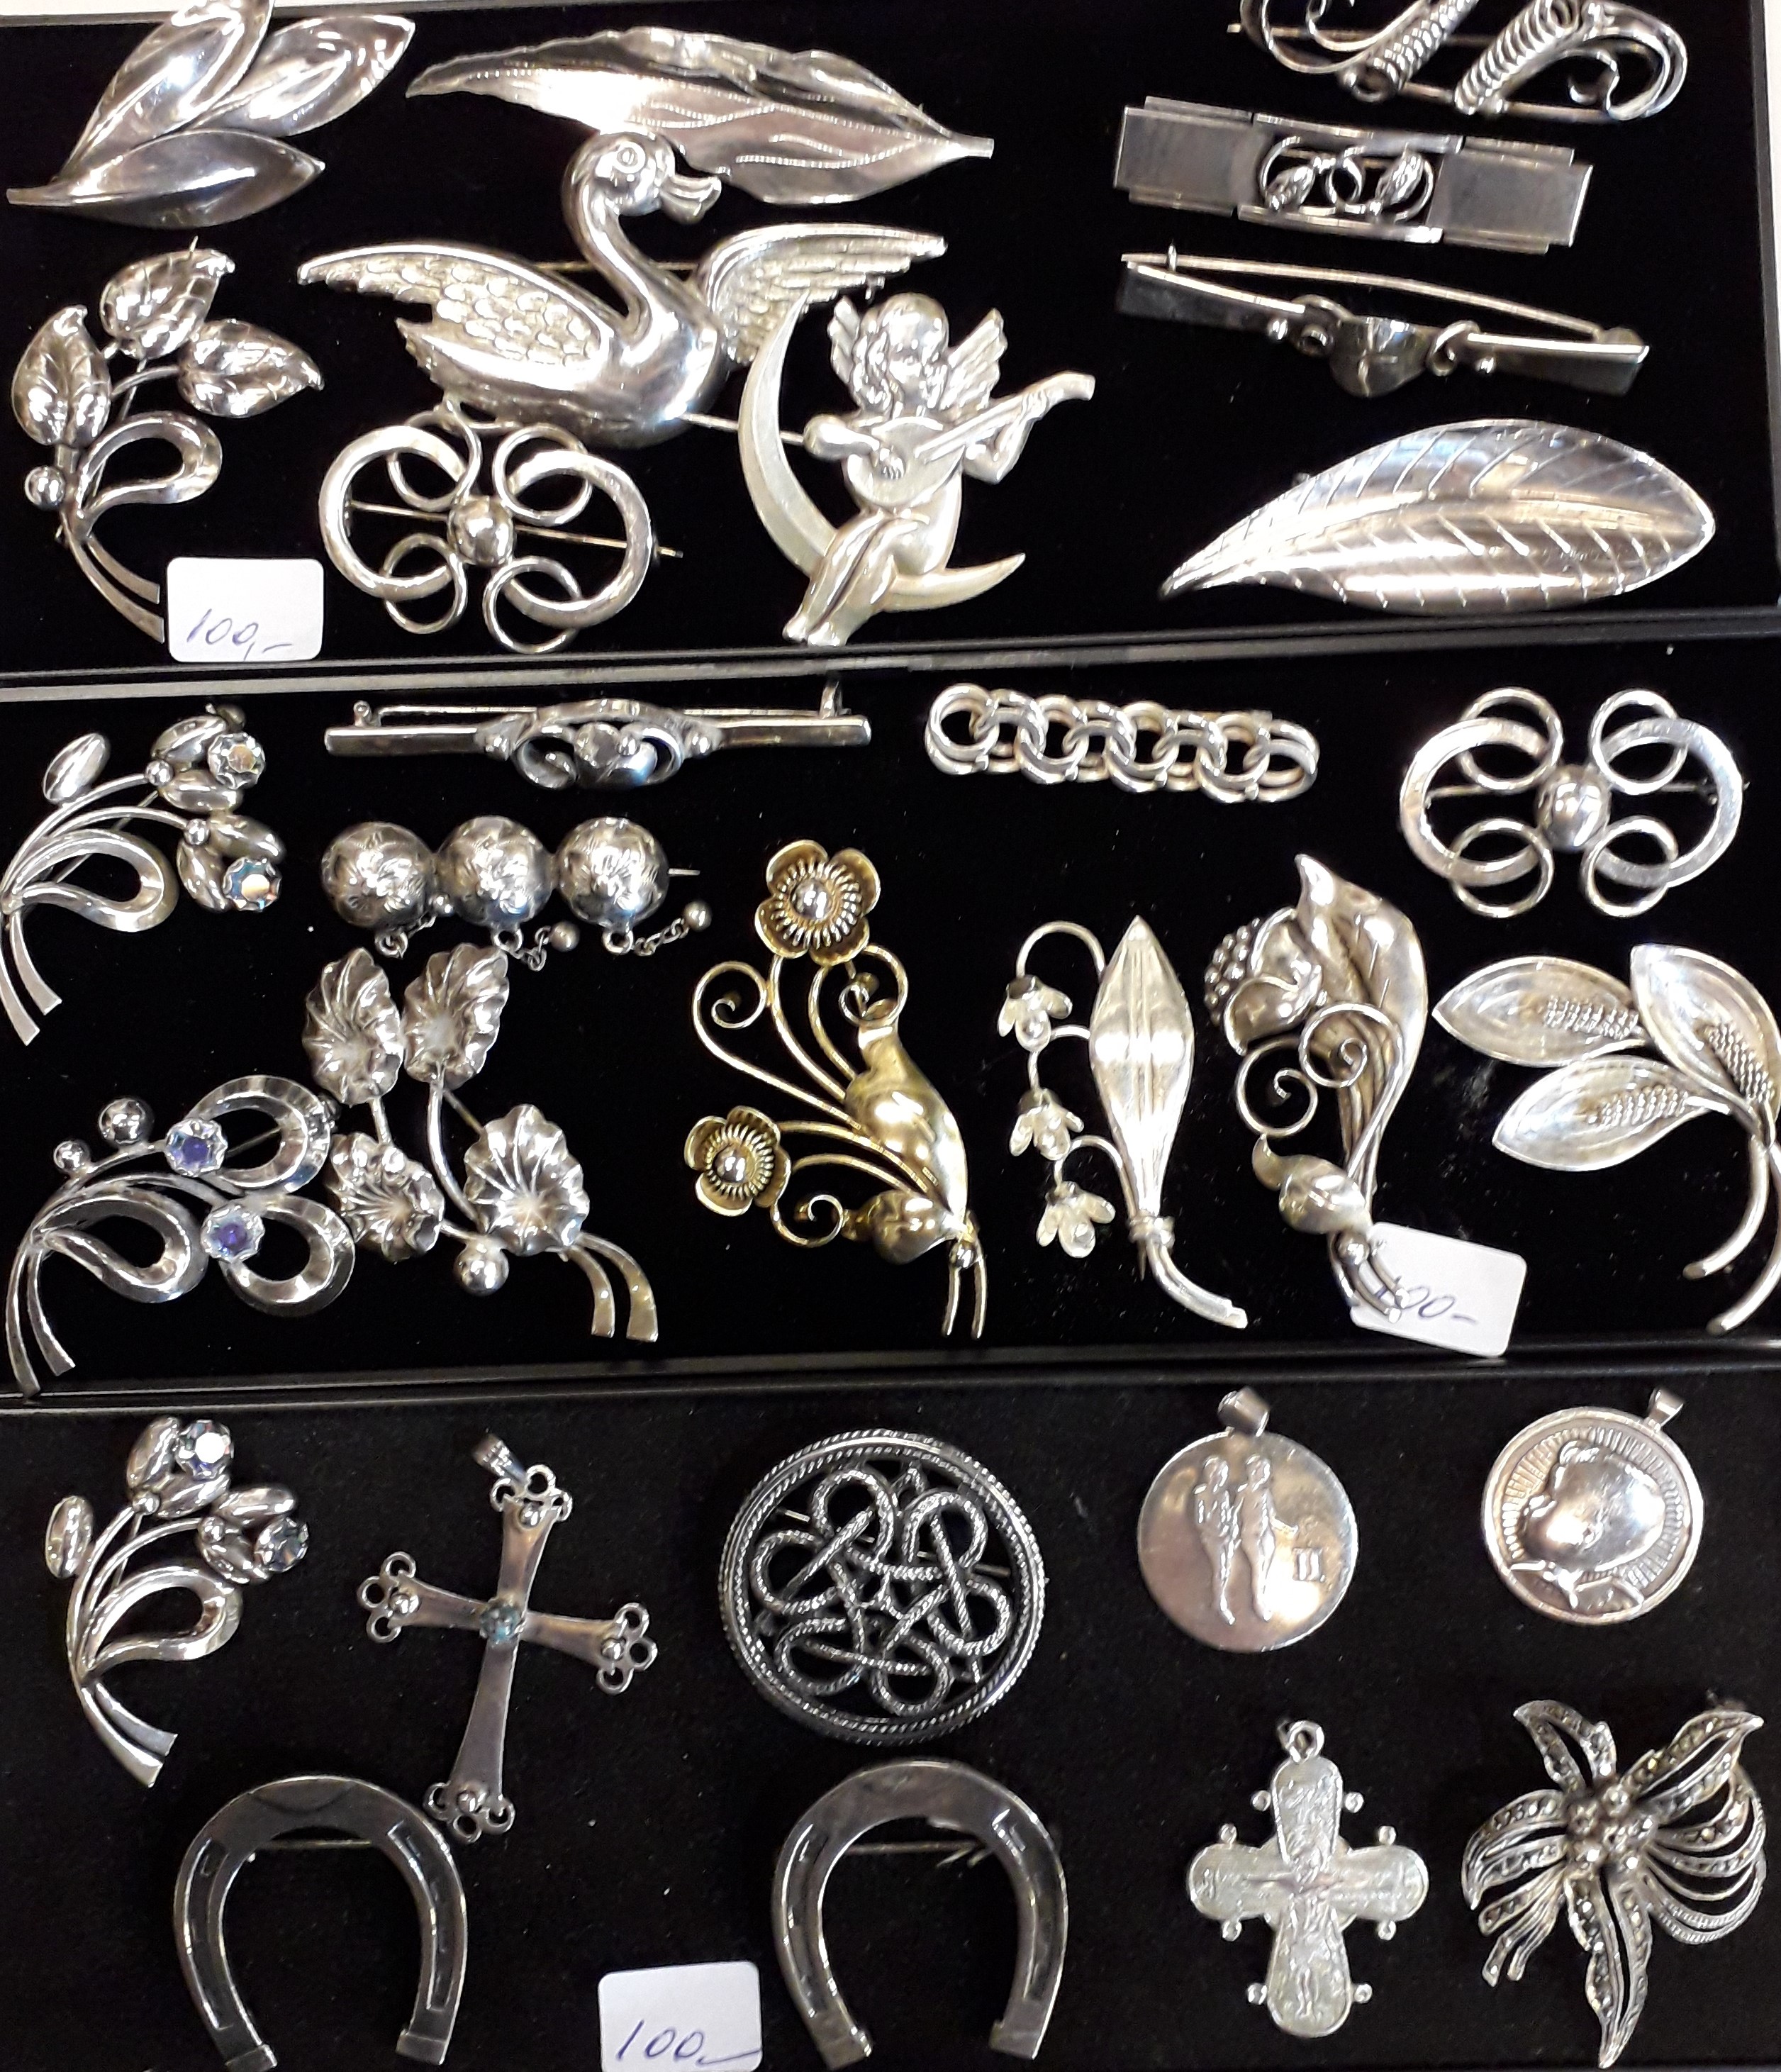 Virksomhedsbeskrivelse Illustrer Nævne SMYKKER, BILLIGE sølv sølvsmykker brugte gamle antikke købes sælges